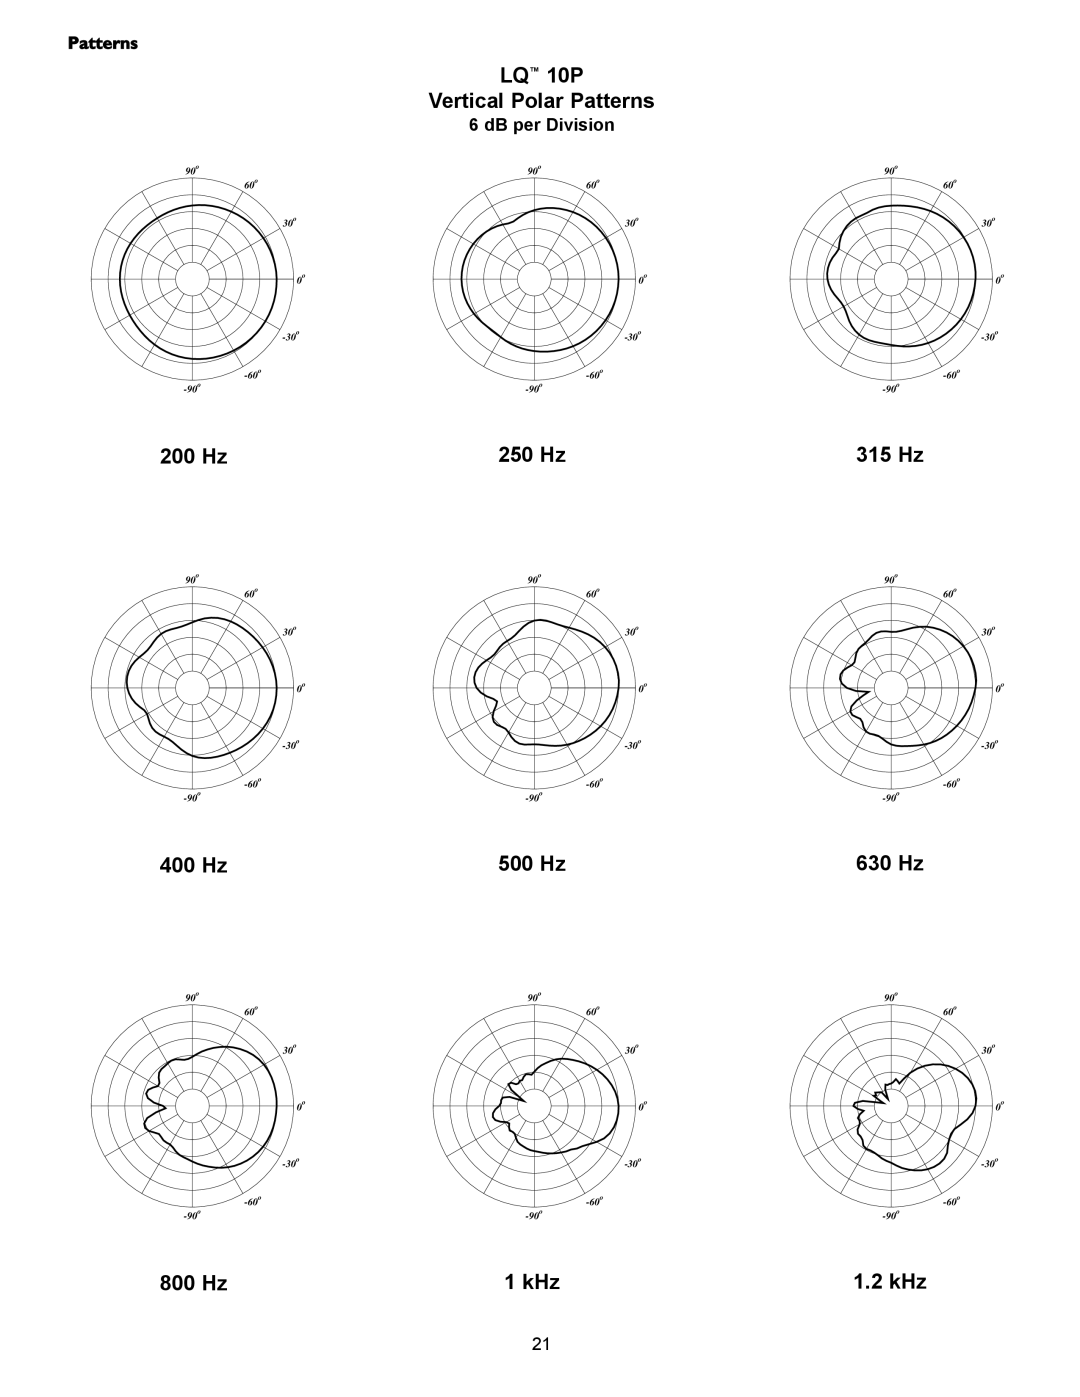 Crest Audio LQ 10P Vertical Polar Patterns, 315 Hz, 630 Hz, 1.2 kHz, 200 Hz, 250 Hz, 400 Hz, 500 Hz, 800 Hz, 1 kHz 